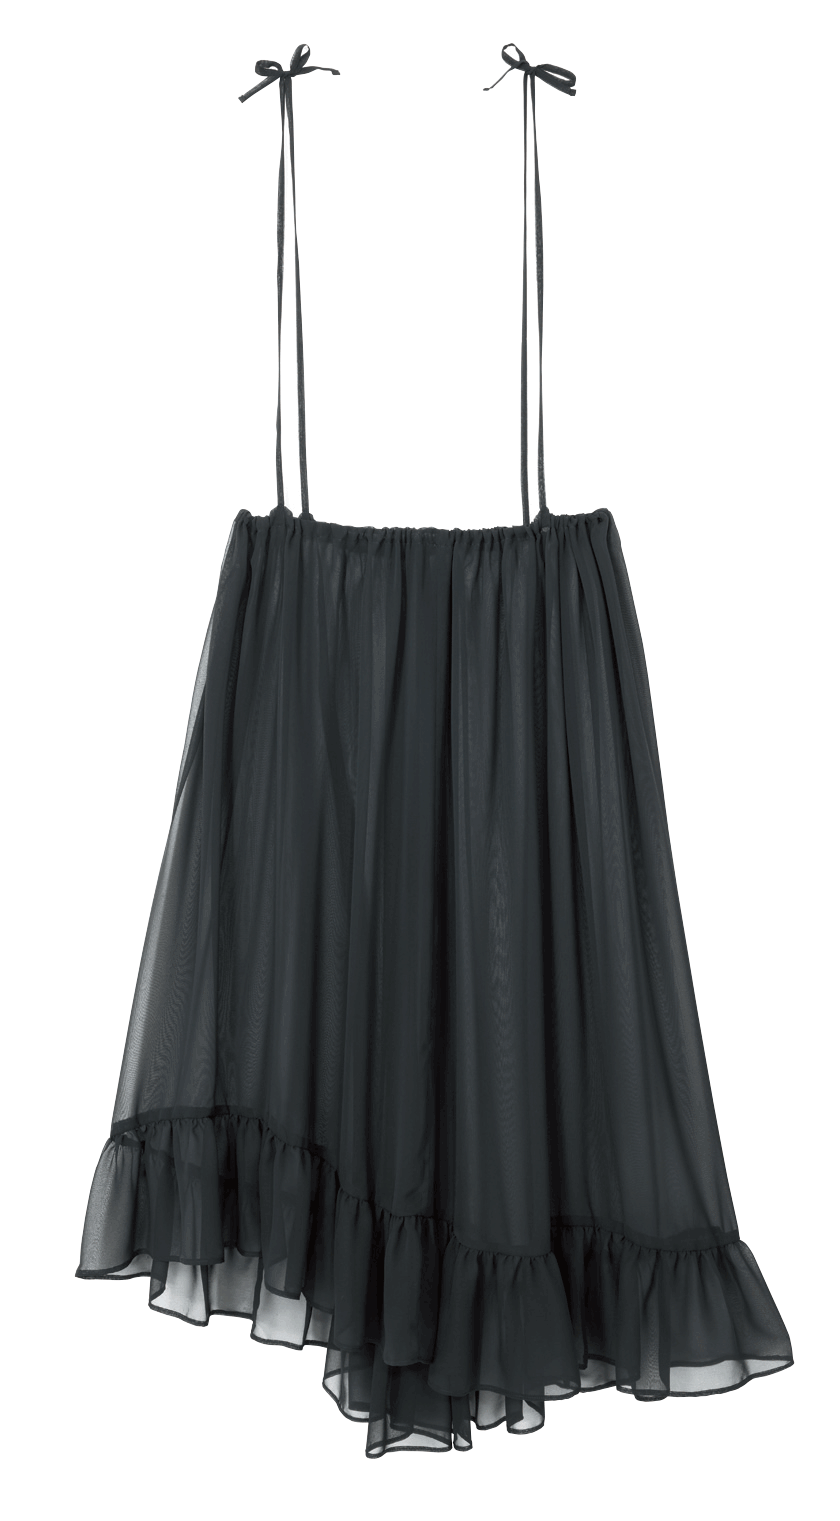 ニットドレスとダウンベストのひとテク【スタイリスト樋口かほりさんによる シンプル派のための重ね着ガイド】使えるスカート